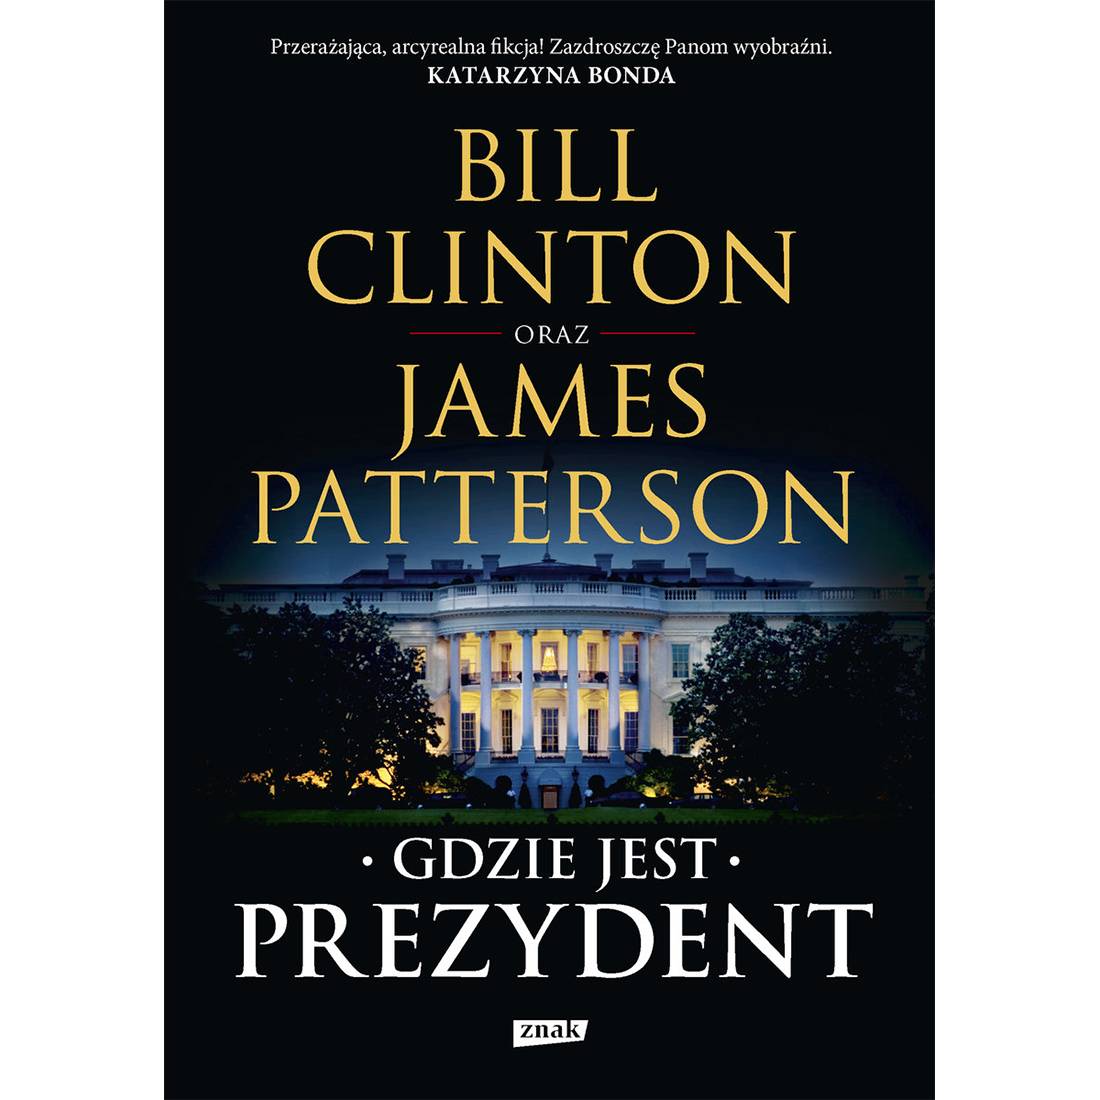 Bill Clinton, James Patterson, „Gdzie jest prezydent”, tłumaczenie Karolina Rybicka, Wydawnictwo Znak